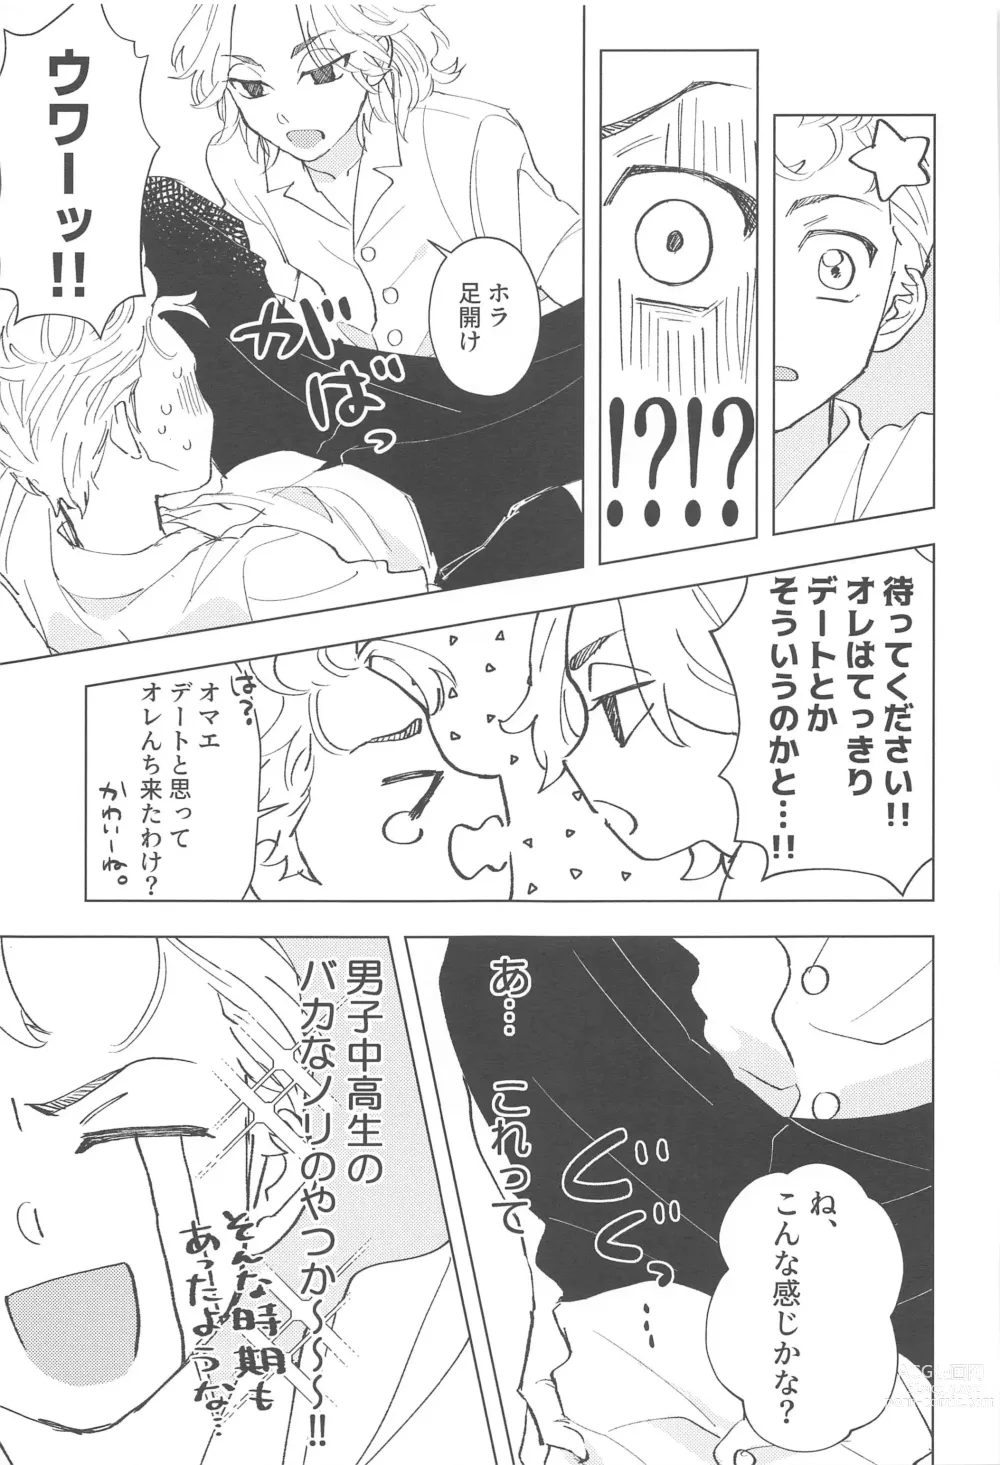 Page 12 of doujinshi Shishunki Heartbeat